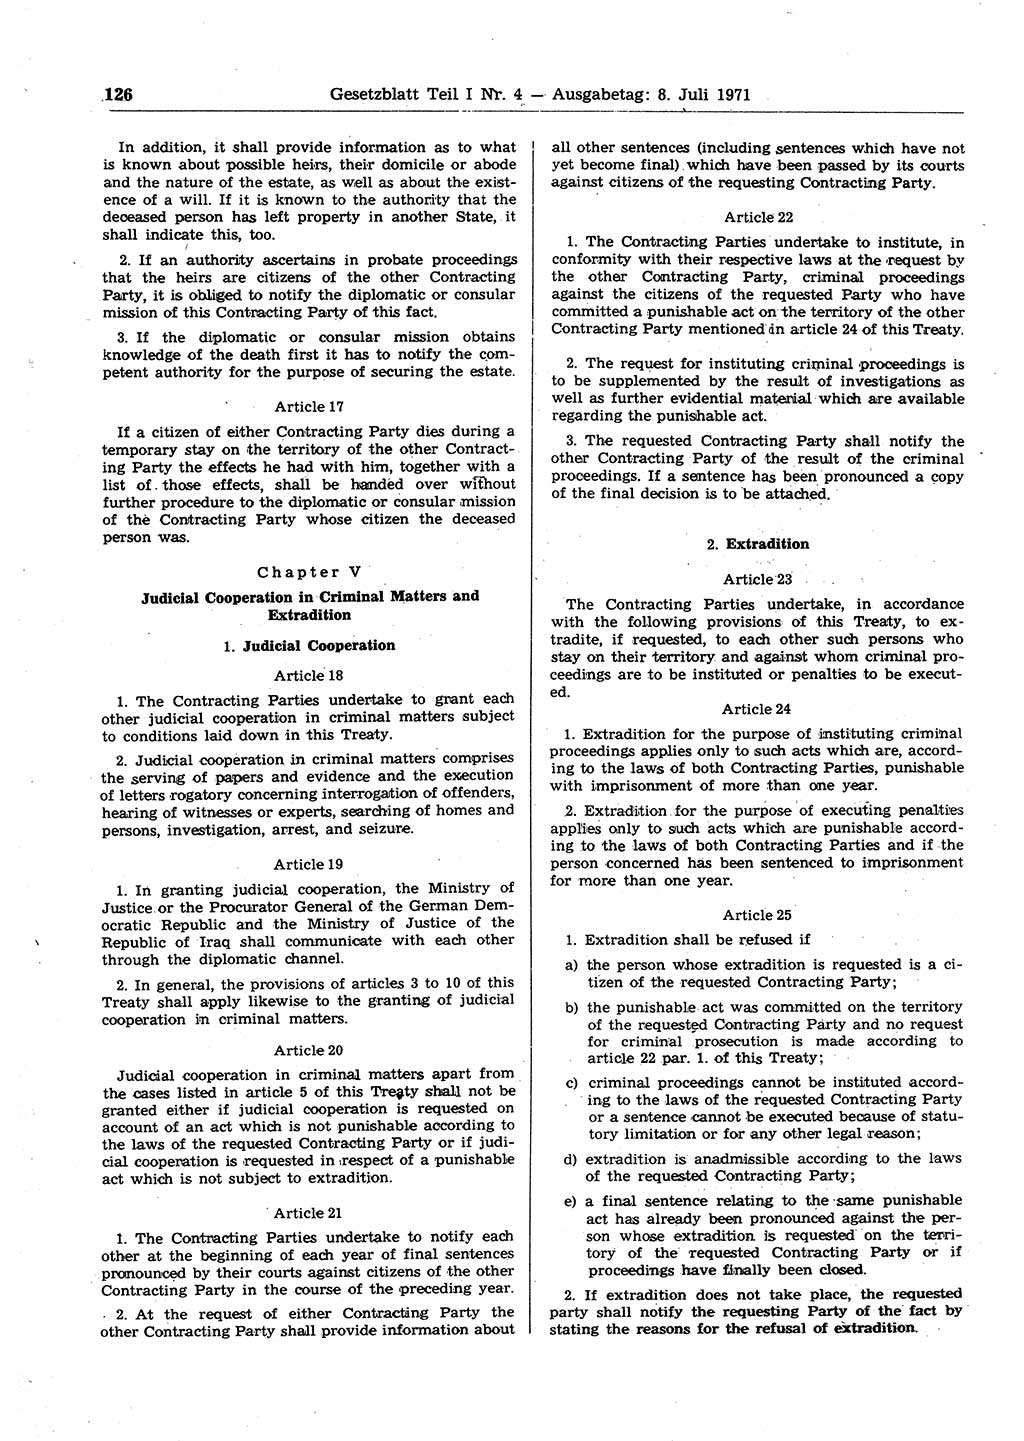 Gesetzblatt (GBl.) der Deutschen Demokratischen Republik (DDR) Teil Ⅰ 1971, Seite 126 (GBl. DDR Ⅰ 1971, S. 126)